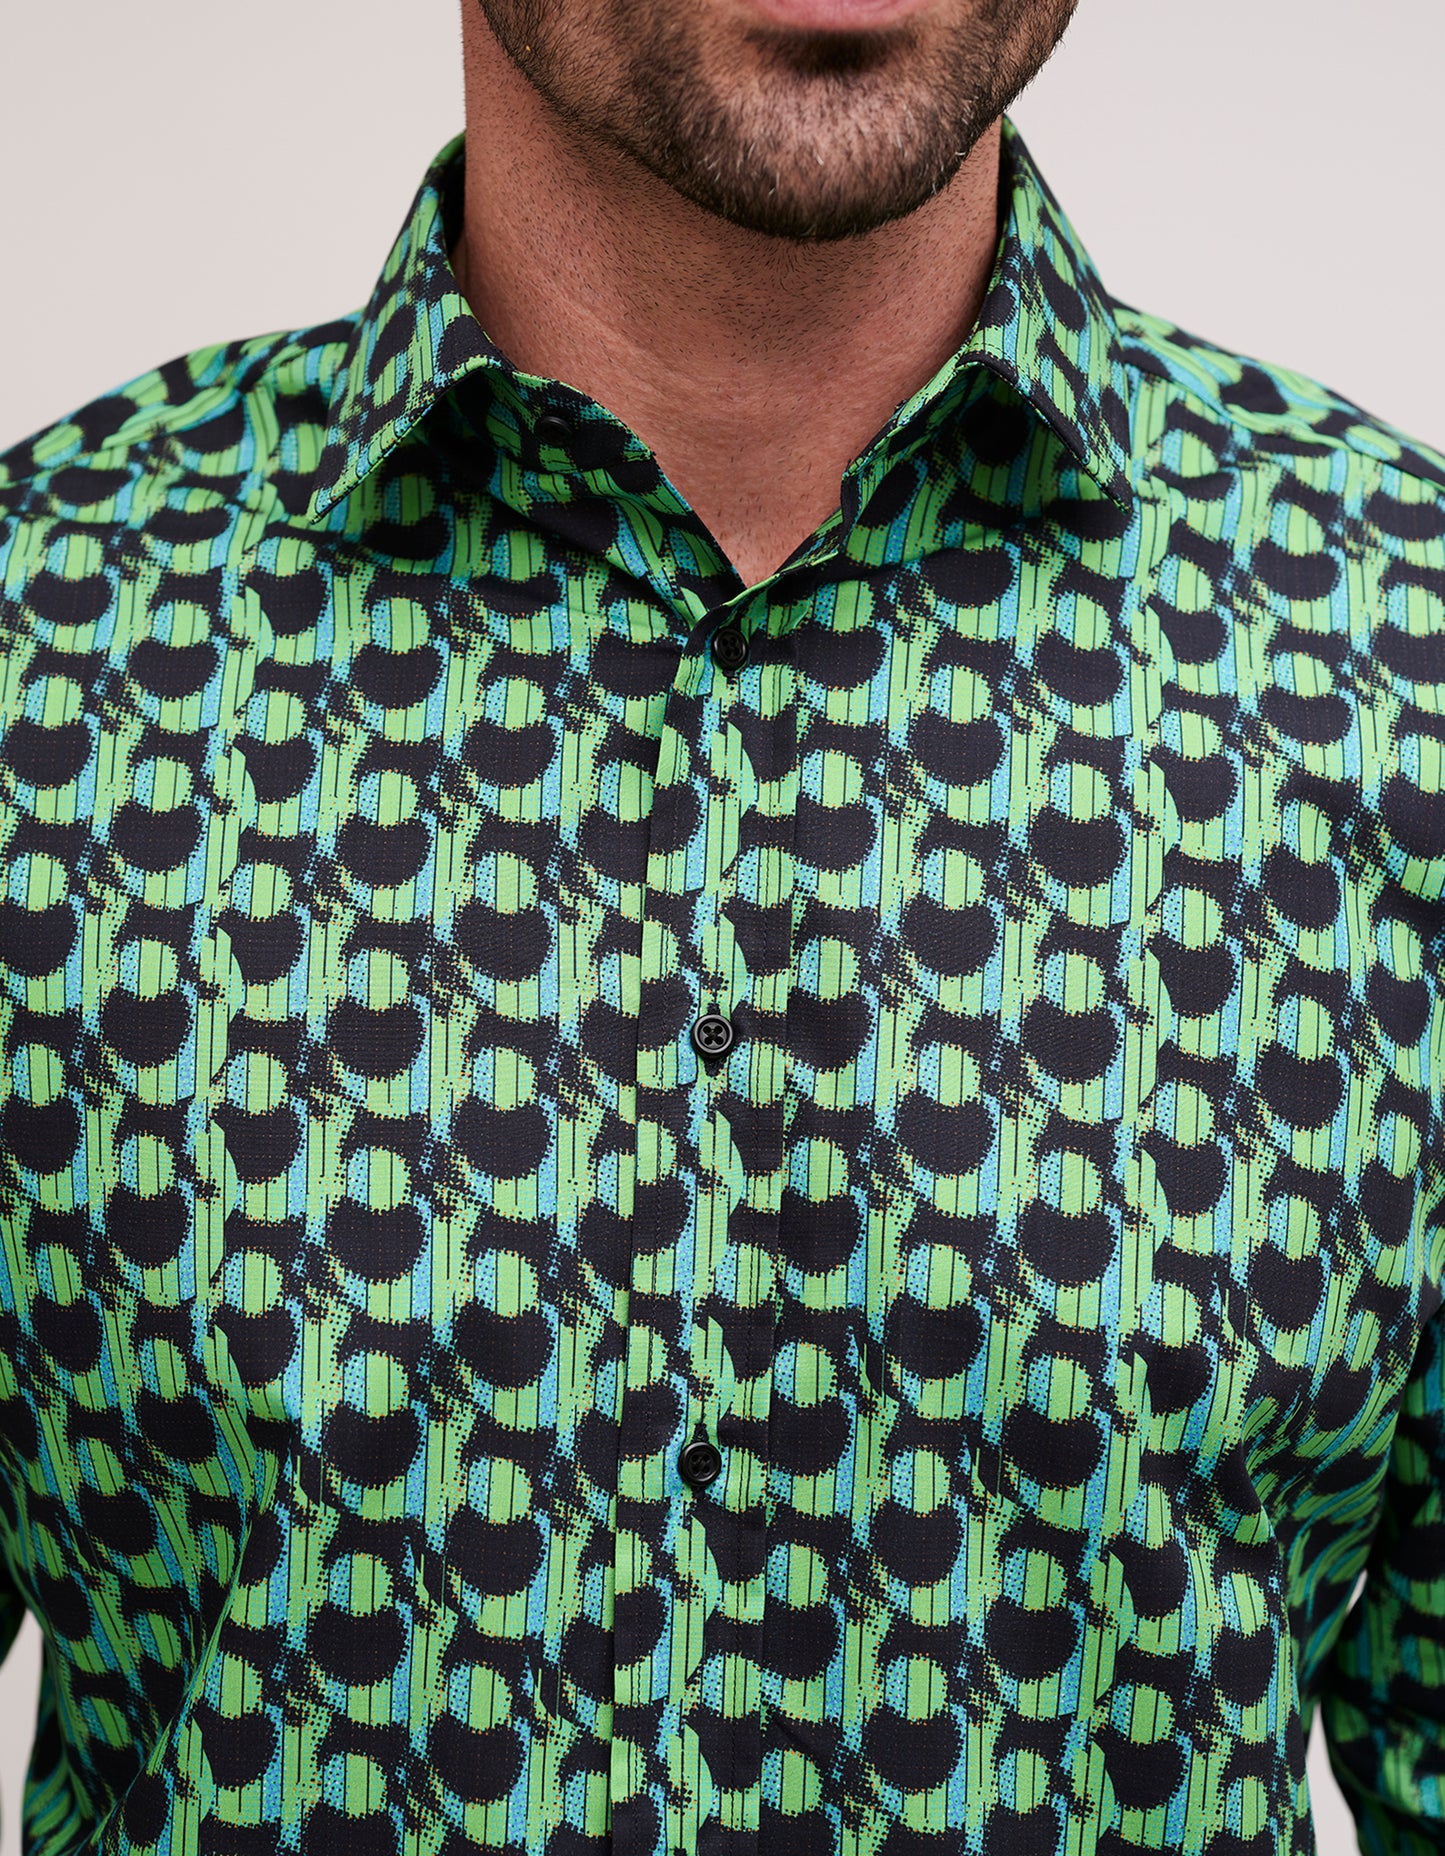 patterned shirts for men